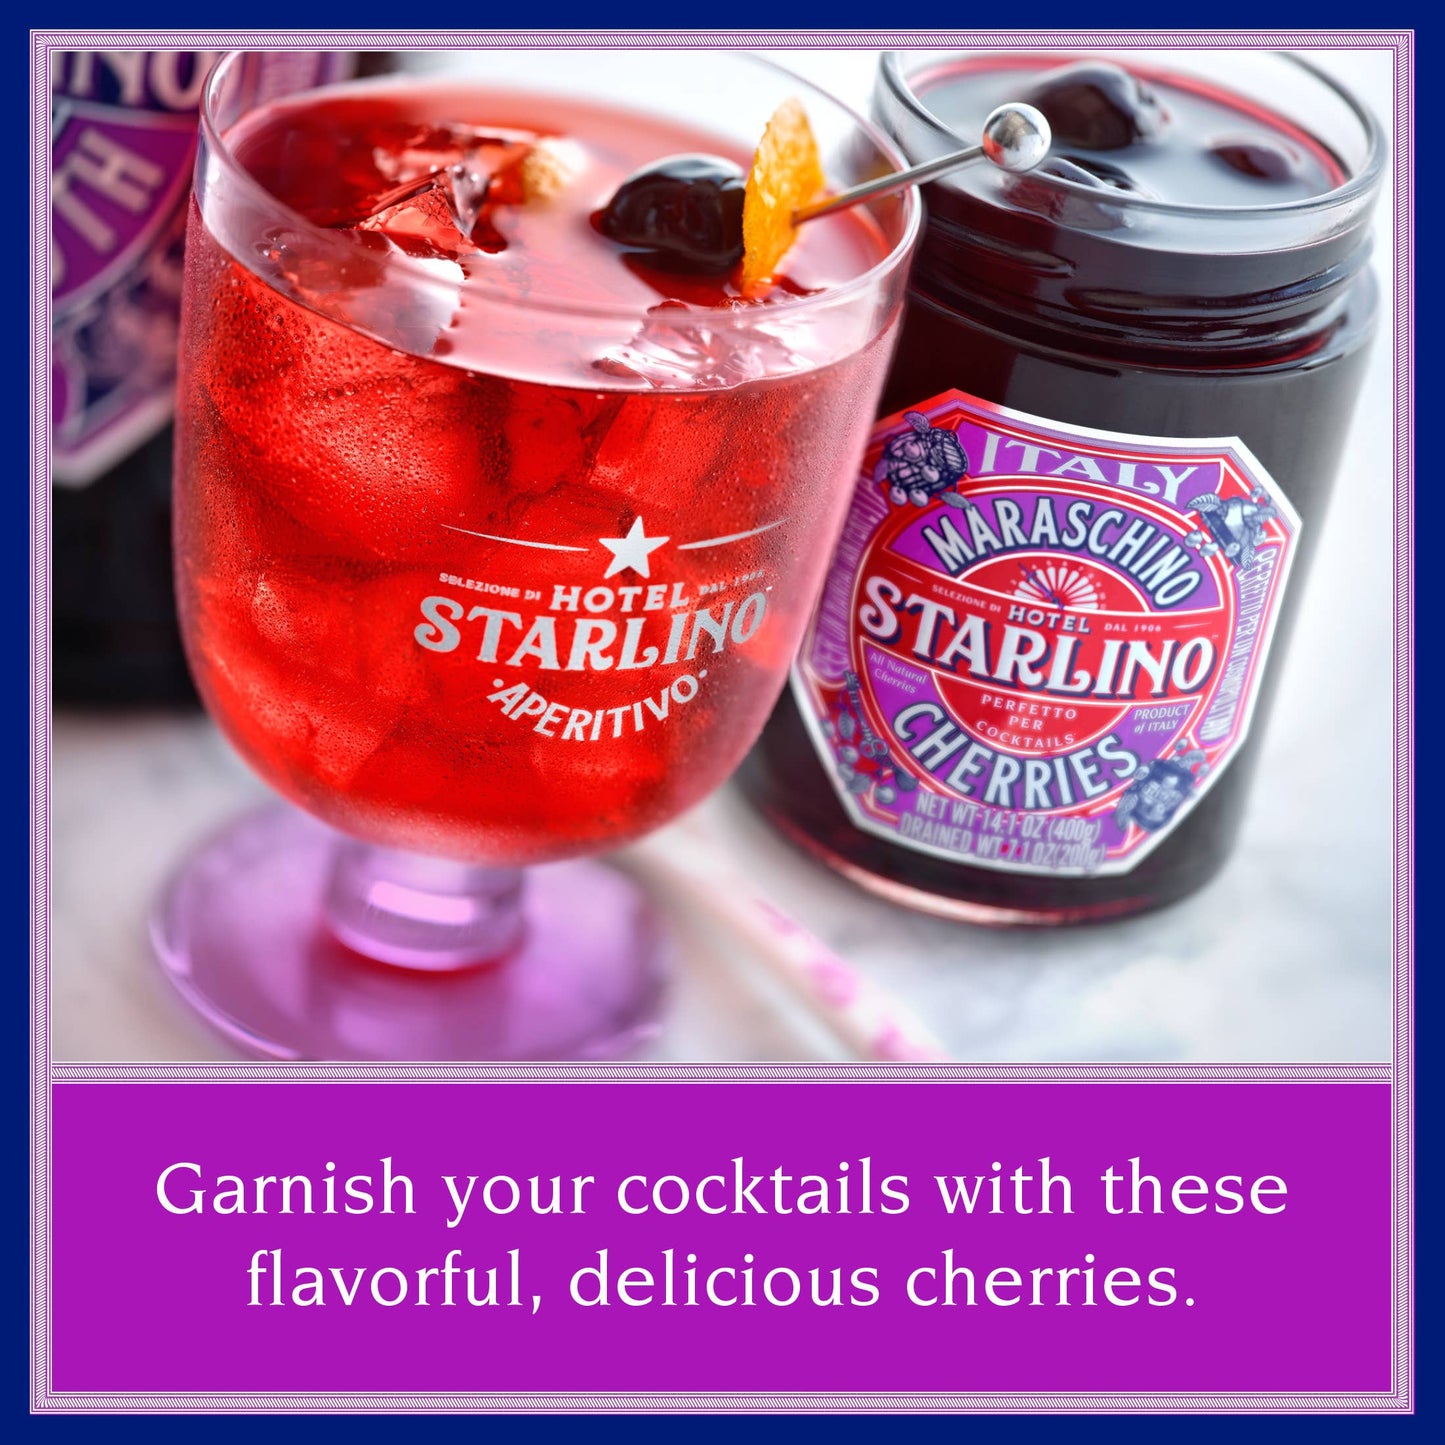 Hotel Starlino Italian Maraschino Cherries - STARLINO Italian Maraschino Cherries - 400g Jars